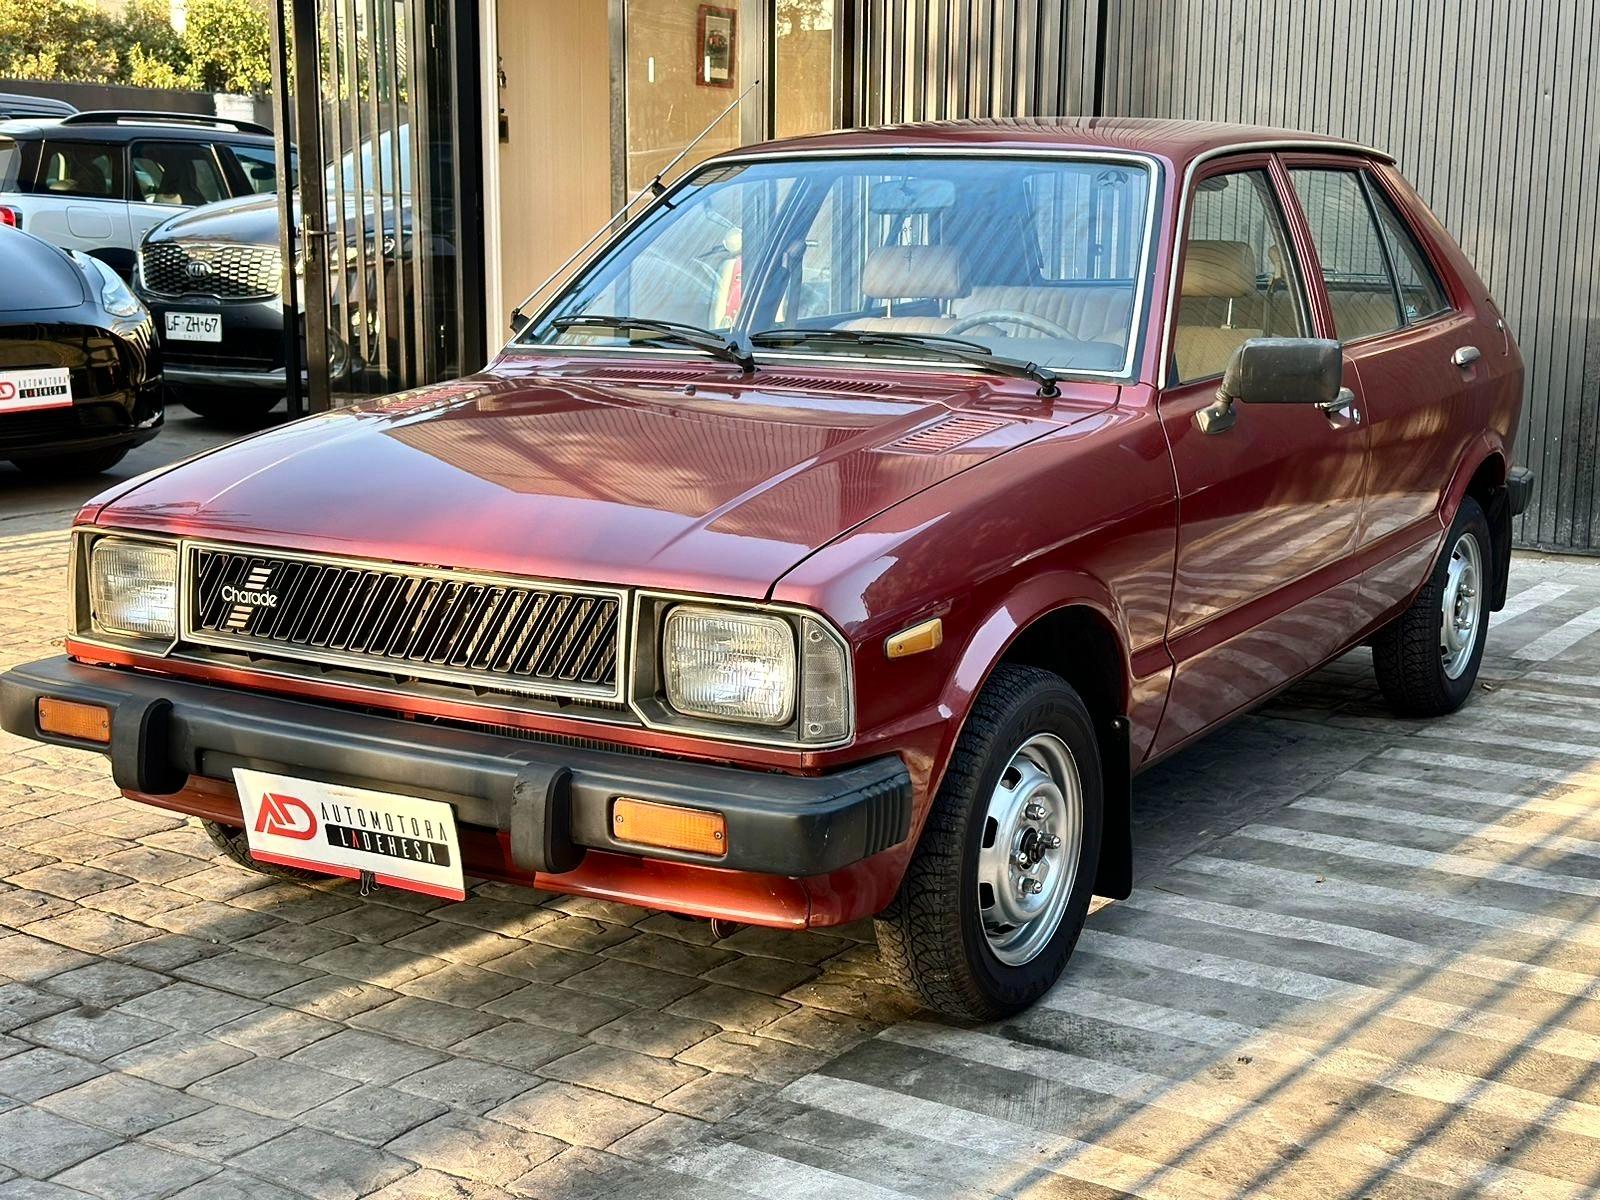 DAIHATSU CHARADE G20 1983 SÓLO 34.500 KILÓMETROS - Automotora La Dehesa